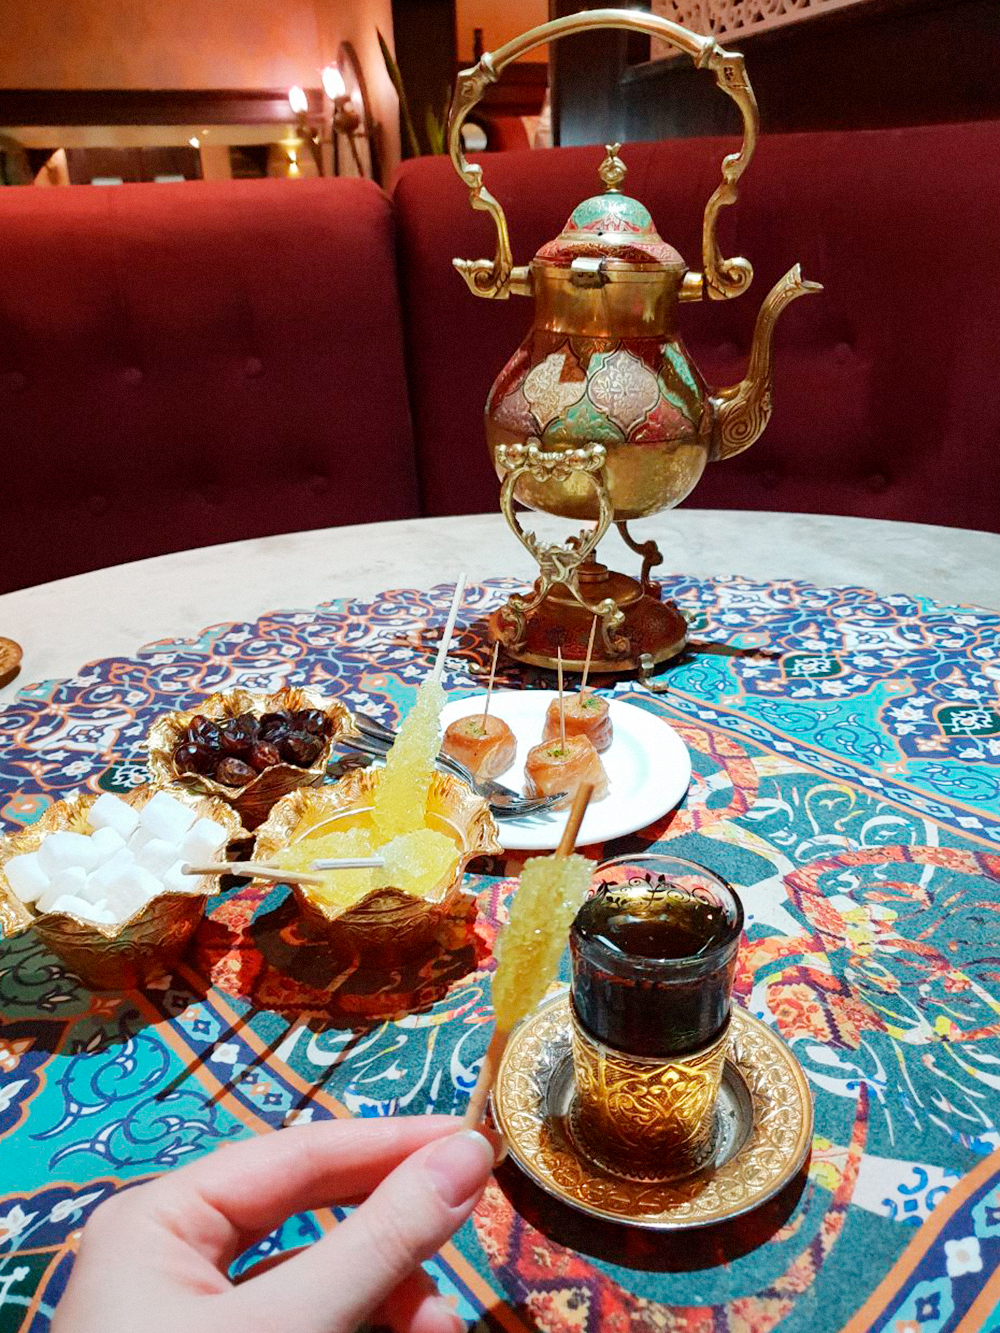 Так красиво подают чай в ресторане персидской кухни. Сахар с шафраном на палочке называется «набот»